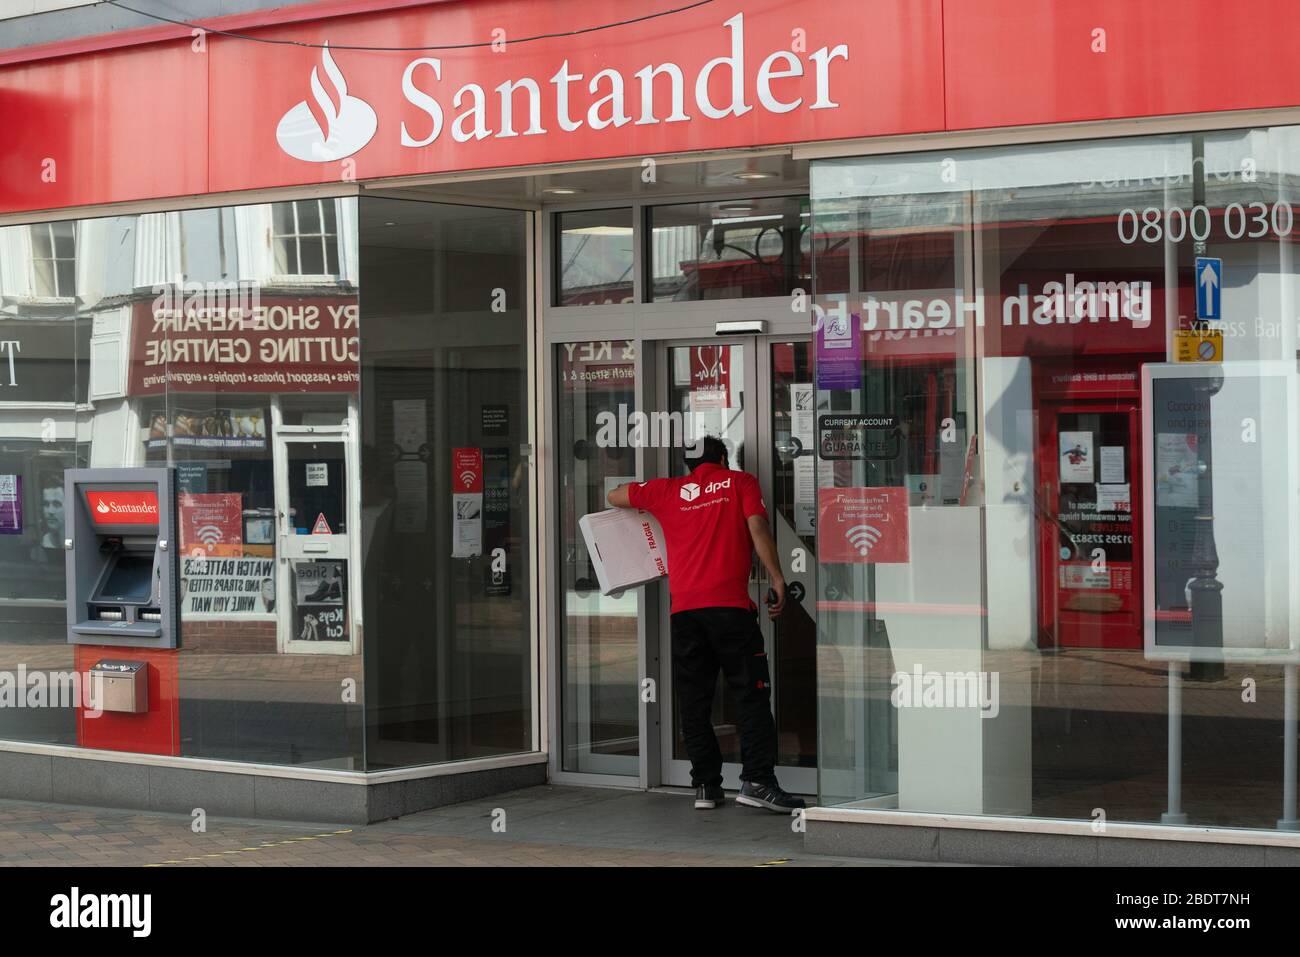 Ein Lieferfahrer wartet außerhalb der Santander Bank. Banken haben während der britischen Lockdown nur eingeschränkte Öffnungszeiten. Coronavirus. Stockfoto